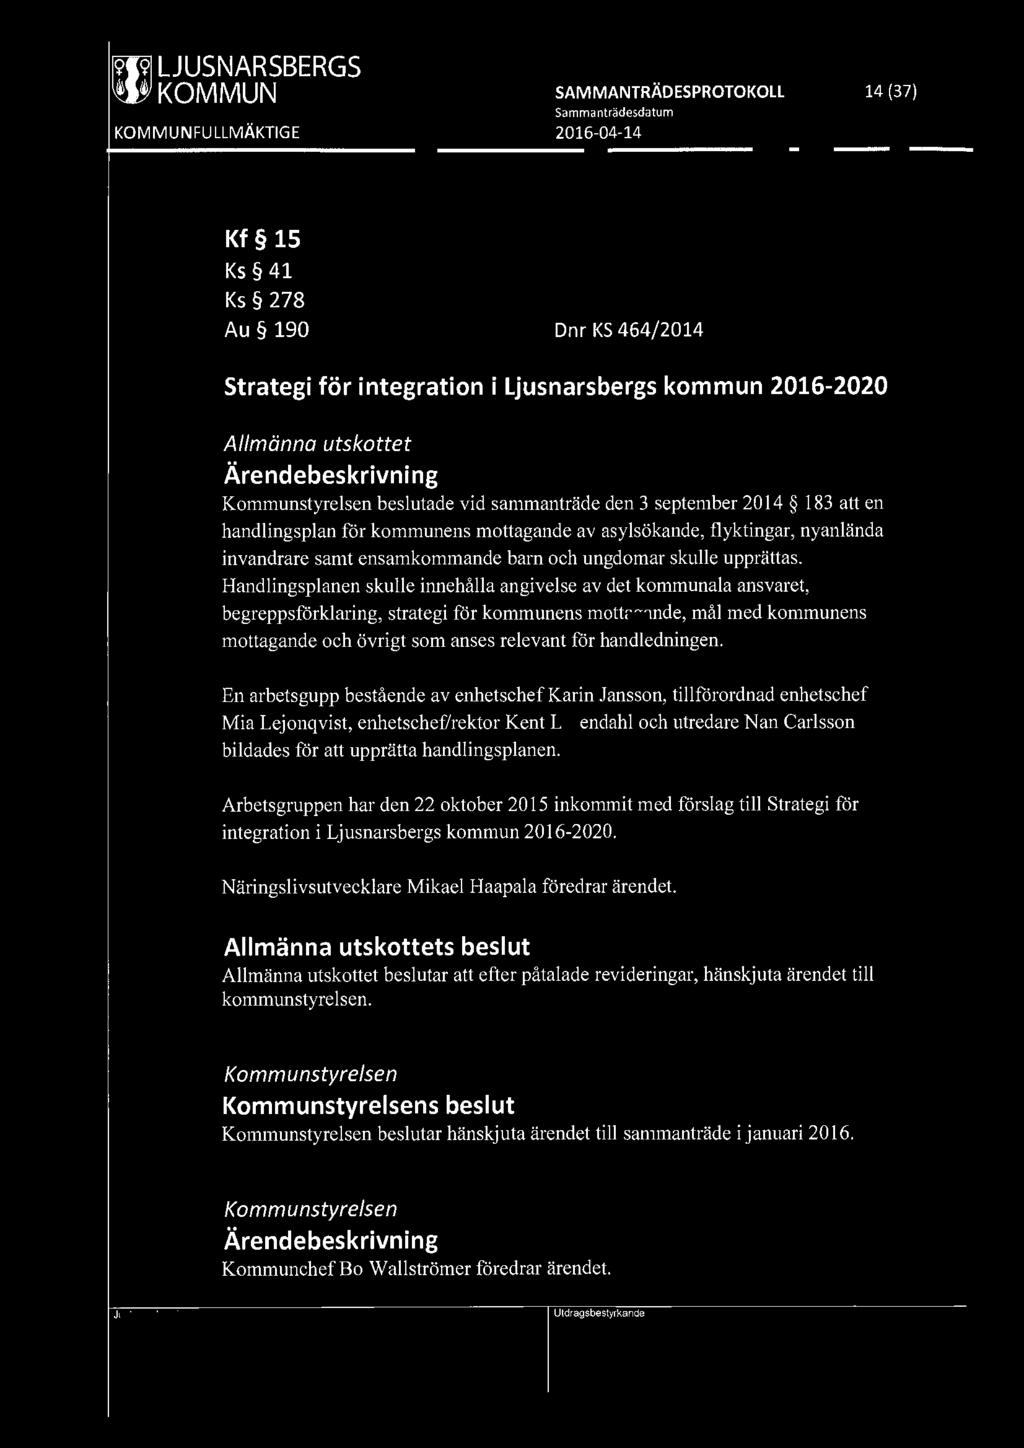 [9191 LJUSNARSBERGS ~ KOMMUN SAMMANTRÄDESPROTOKOLL 14 (37) Kf 15 Ks 41 Ks 278 Au 190 Dnr KS 464/2014 Strategi för integration i Ljusnarsbergs kommun 2016-2020 Allmänna utskottet Kommunstyrelsen